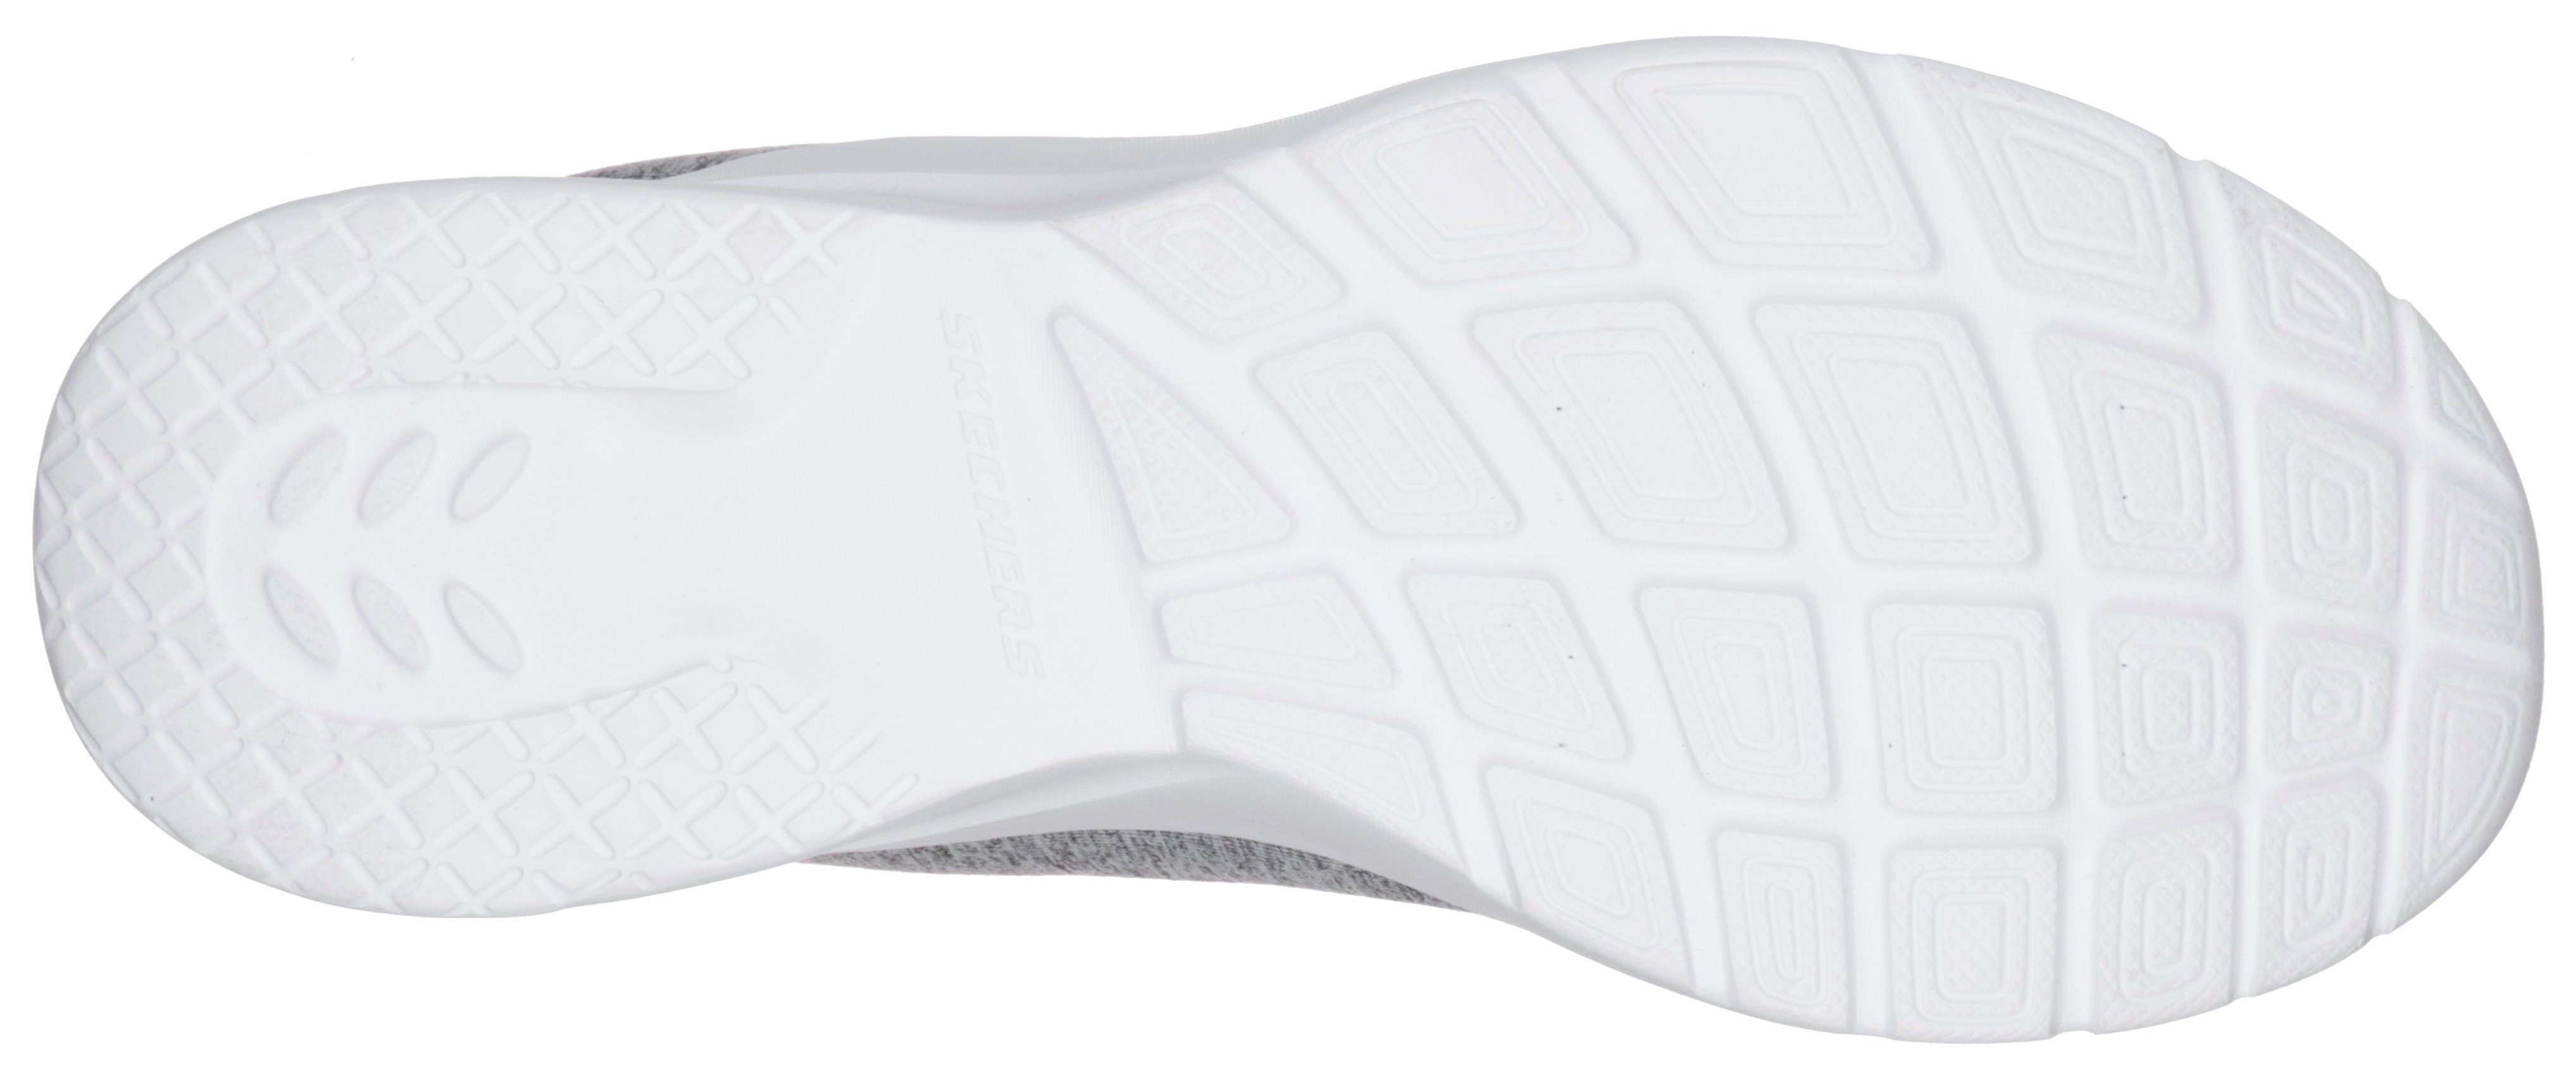 Maschinenwäsche Slip-On Skechers 2.0-IN für DYNAMIGHT geeignet Sneaker grau-mint FLASH A